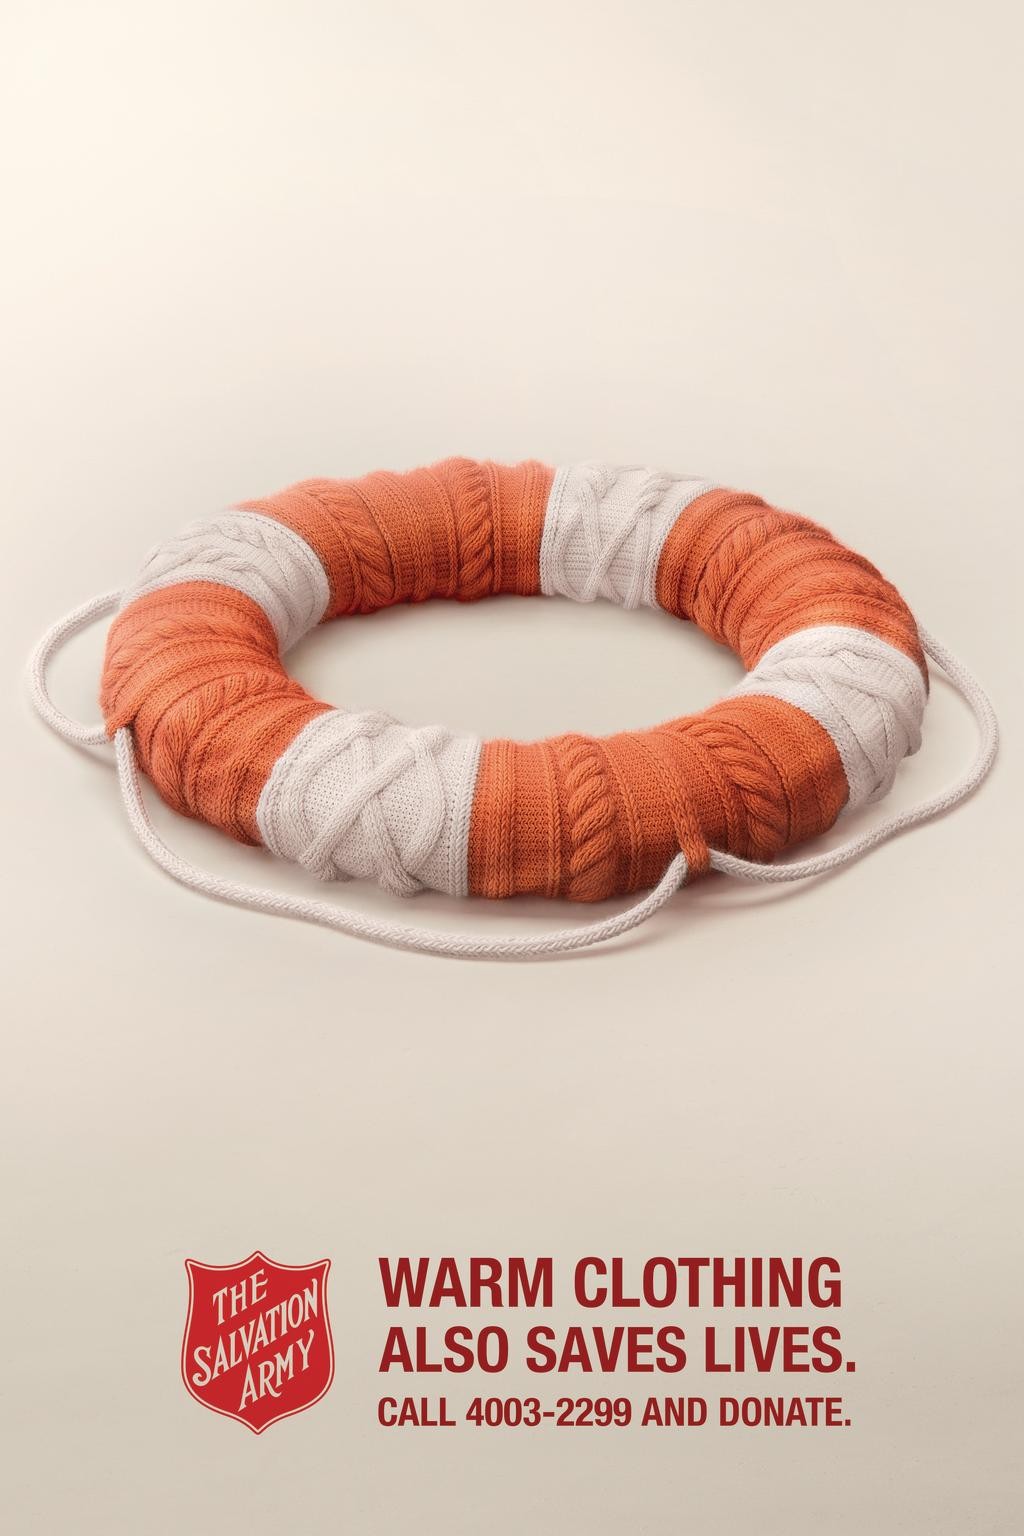 Warm clothing